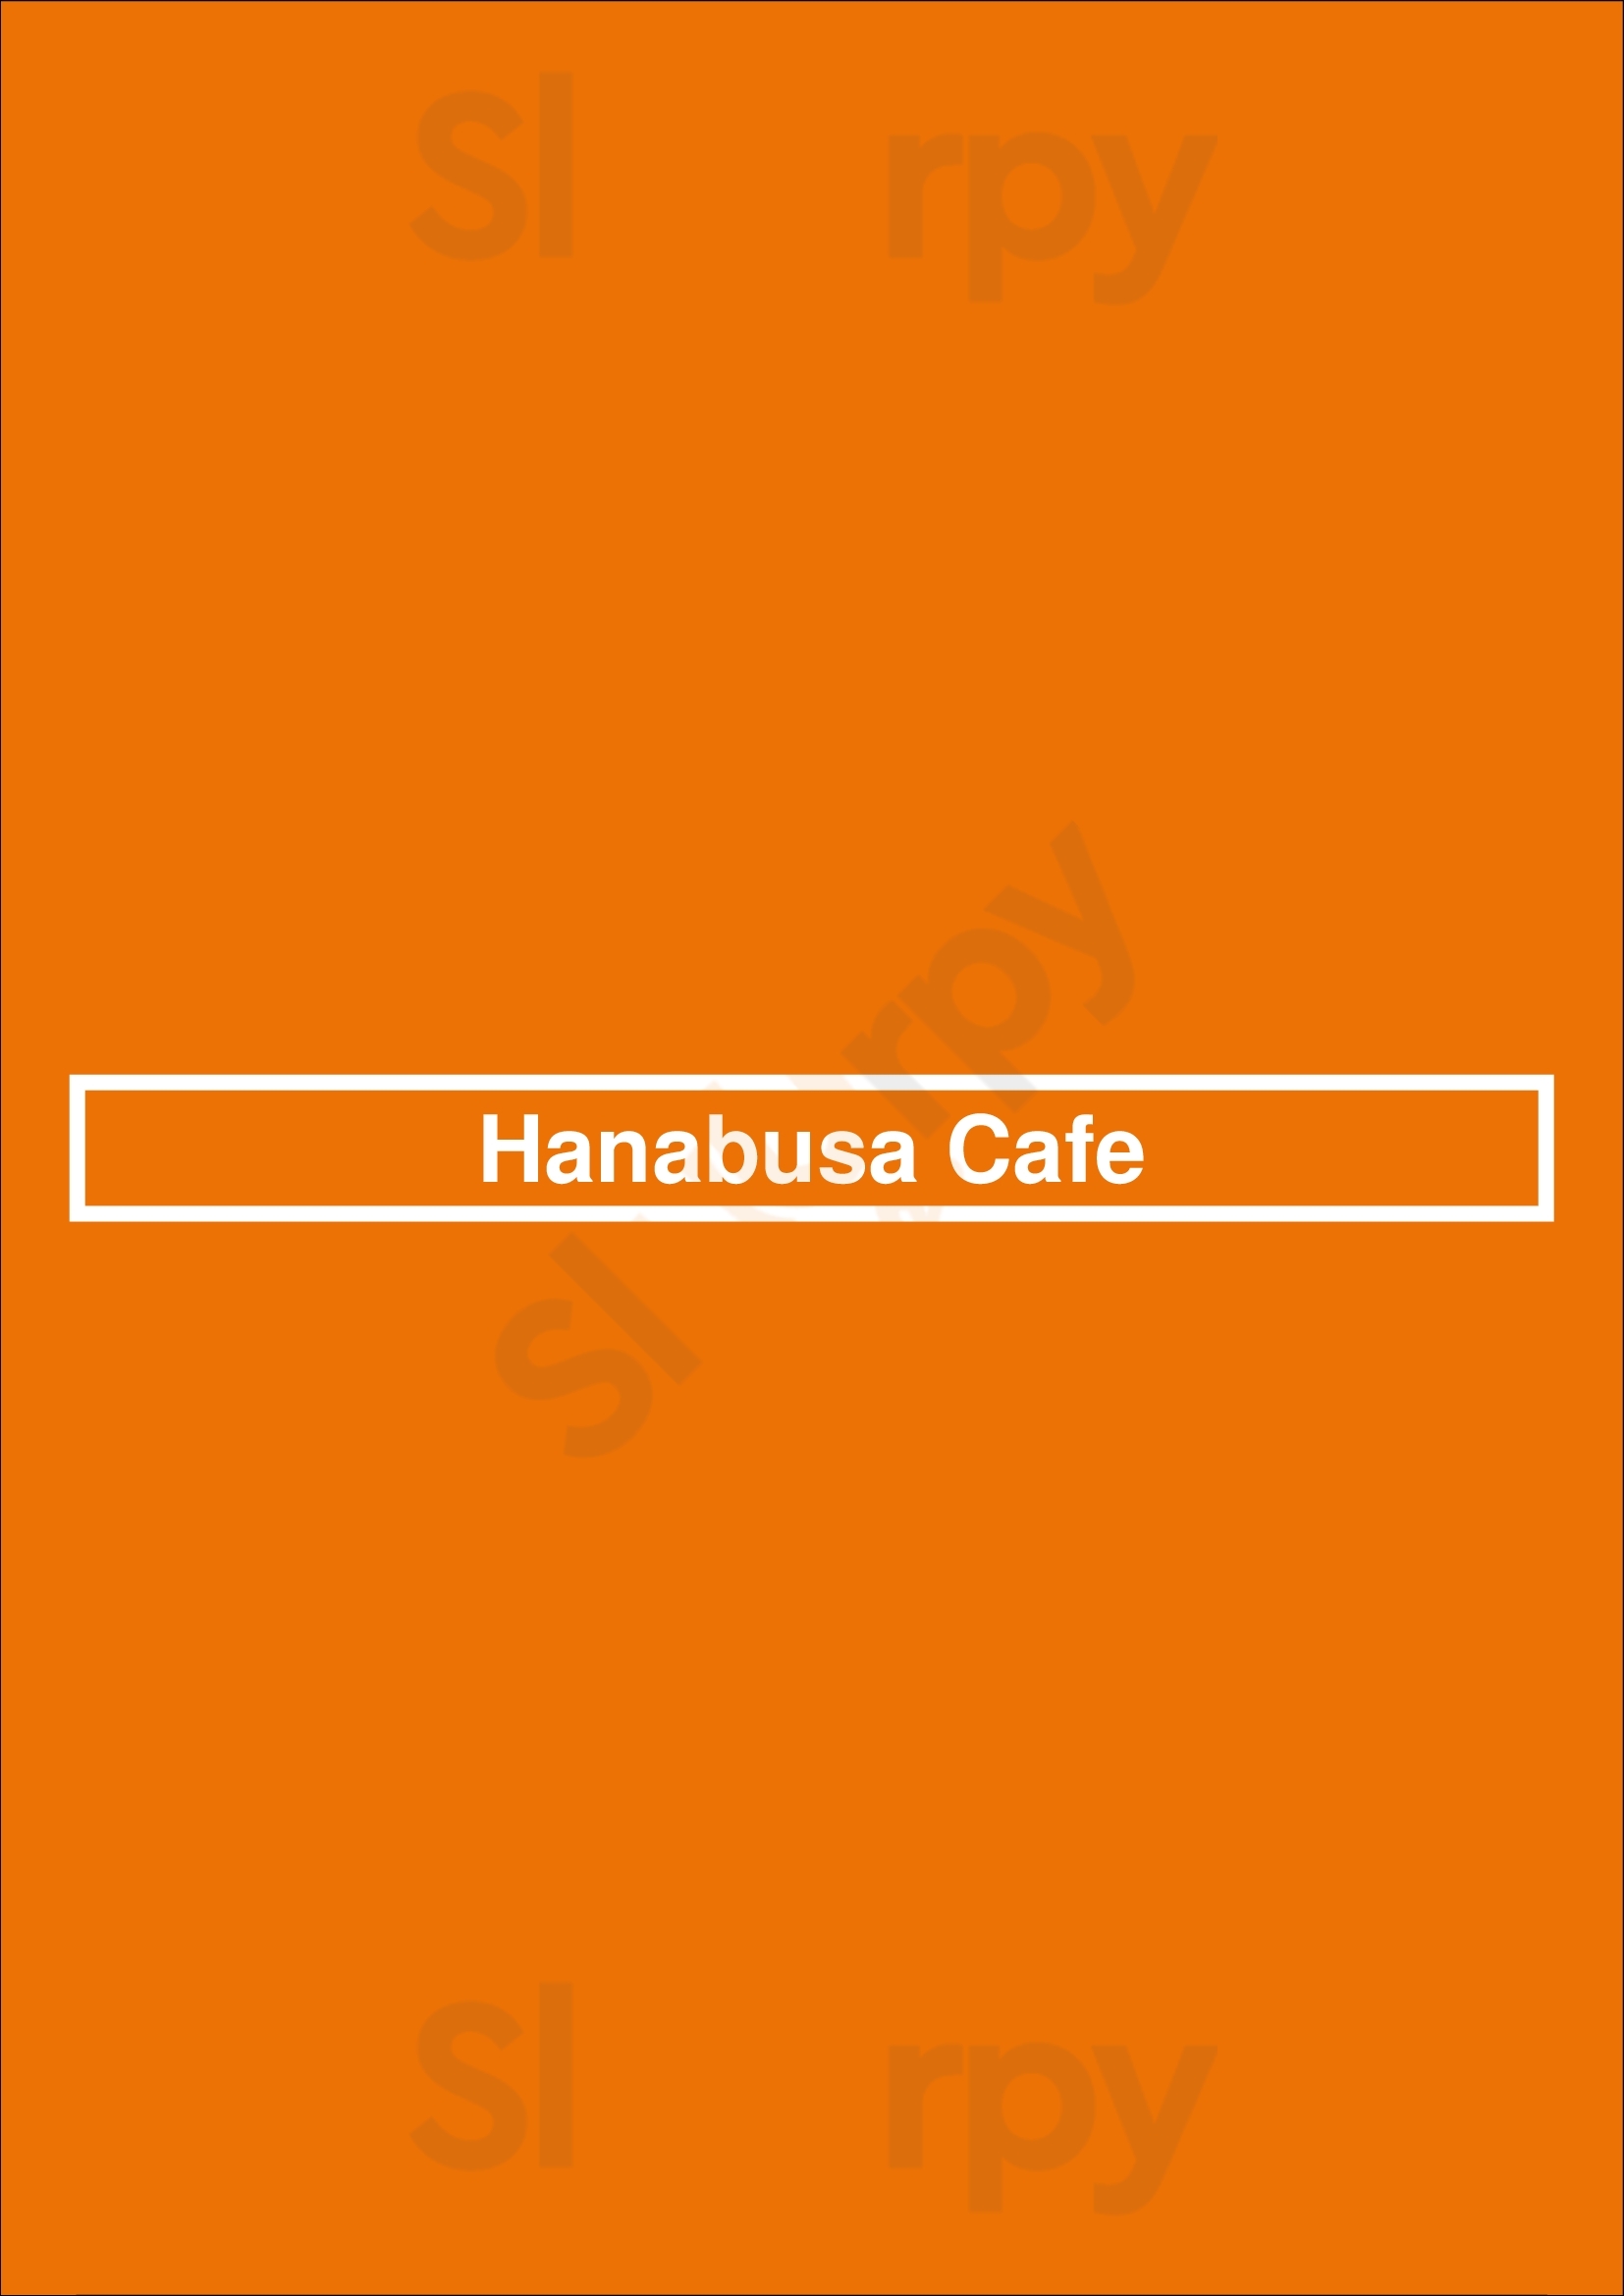 Hanabusa Cafe Toronto Menu - 1